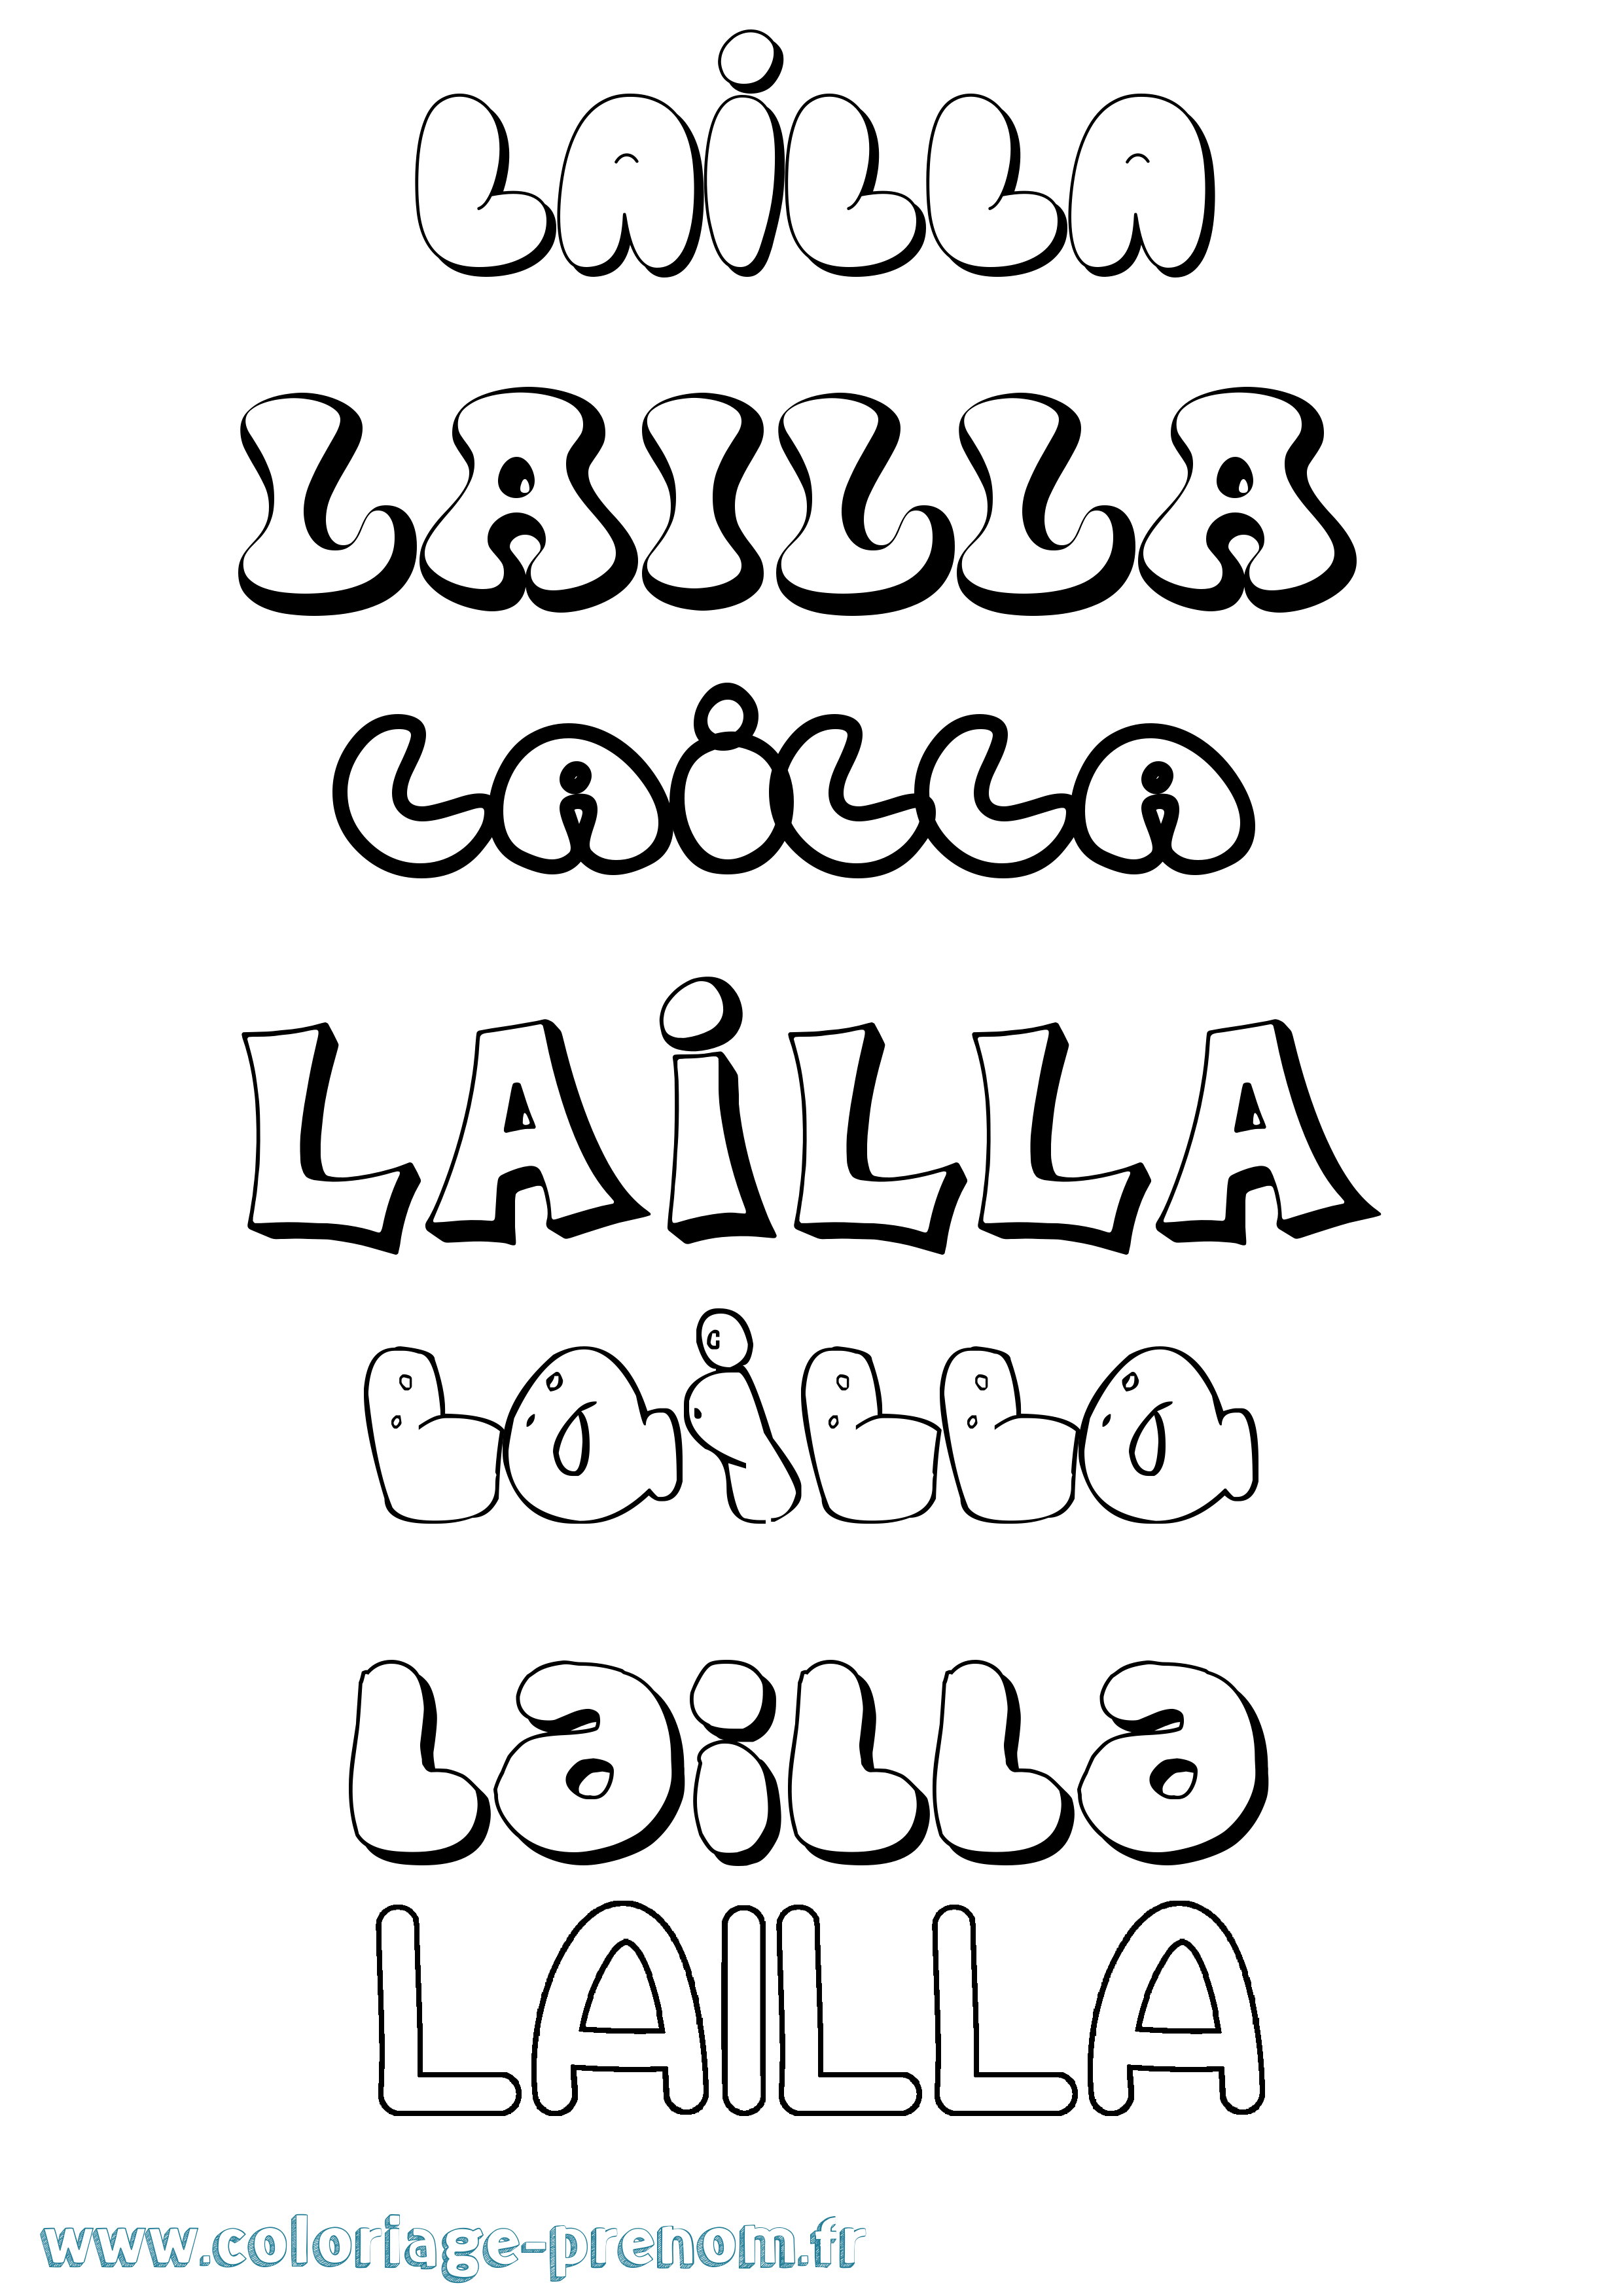 Coloriage prénom Lailla Bubble